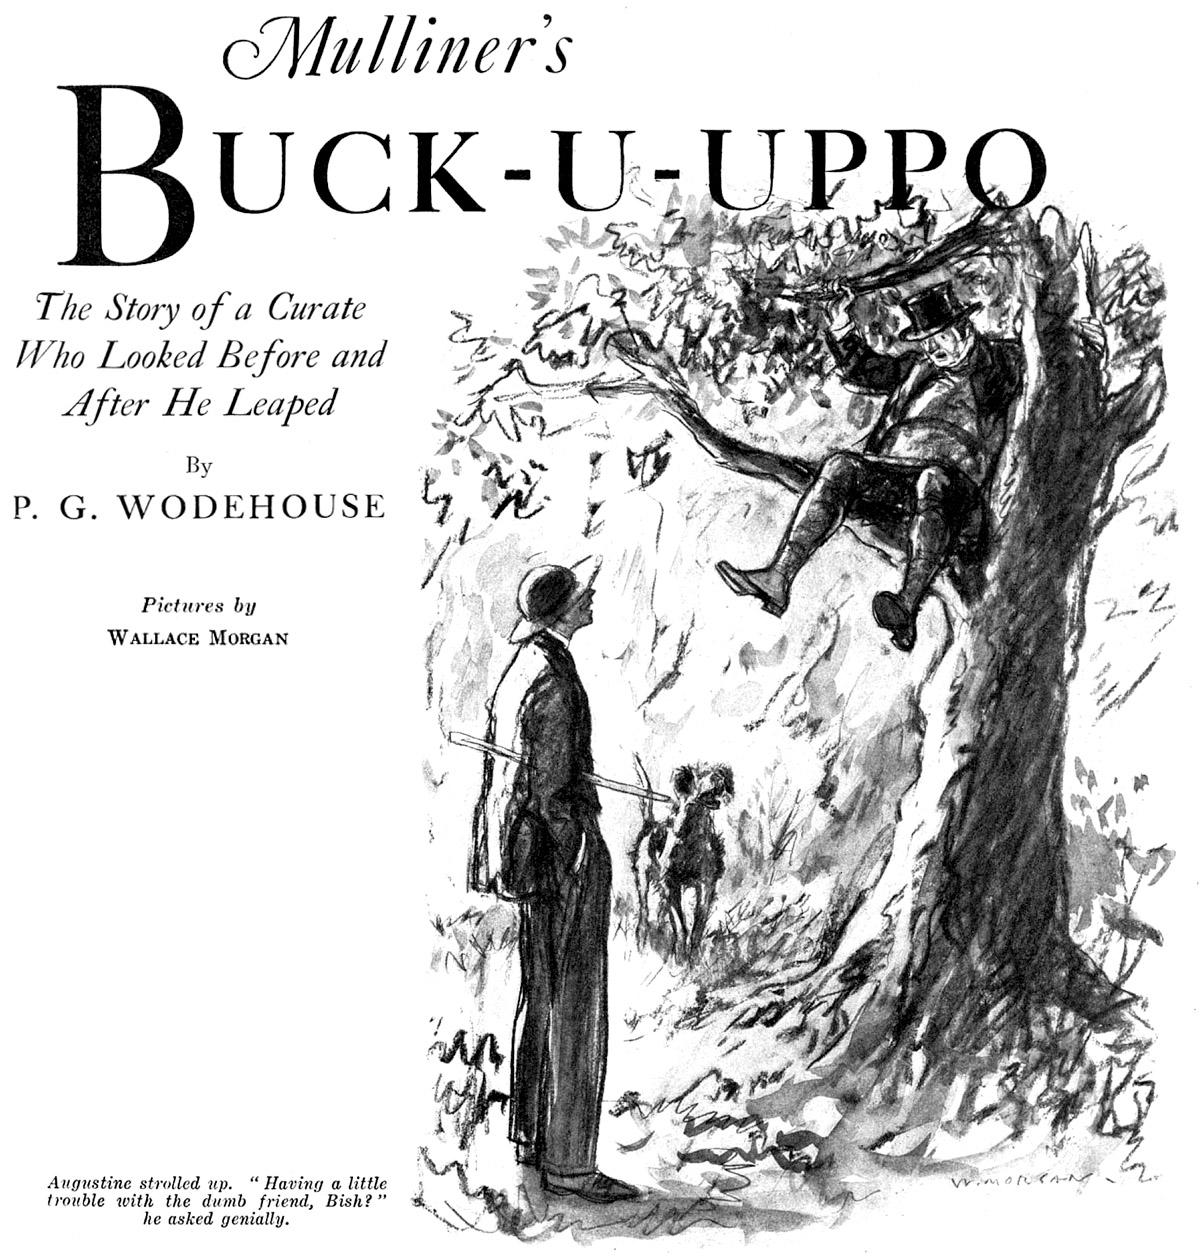 Mulliner’s Buck-U-Uppo, by P. G. Wodehouse